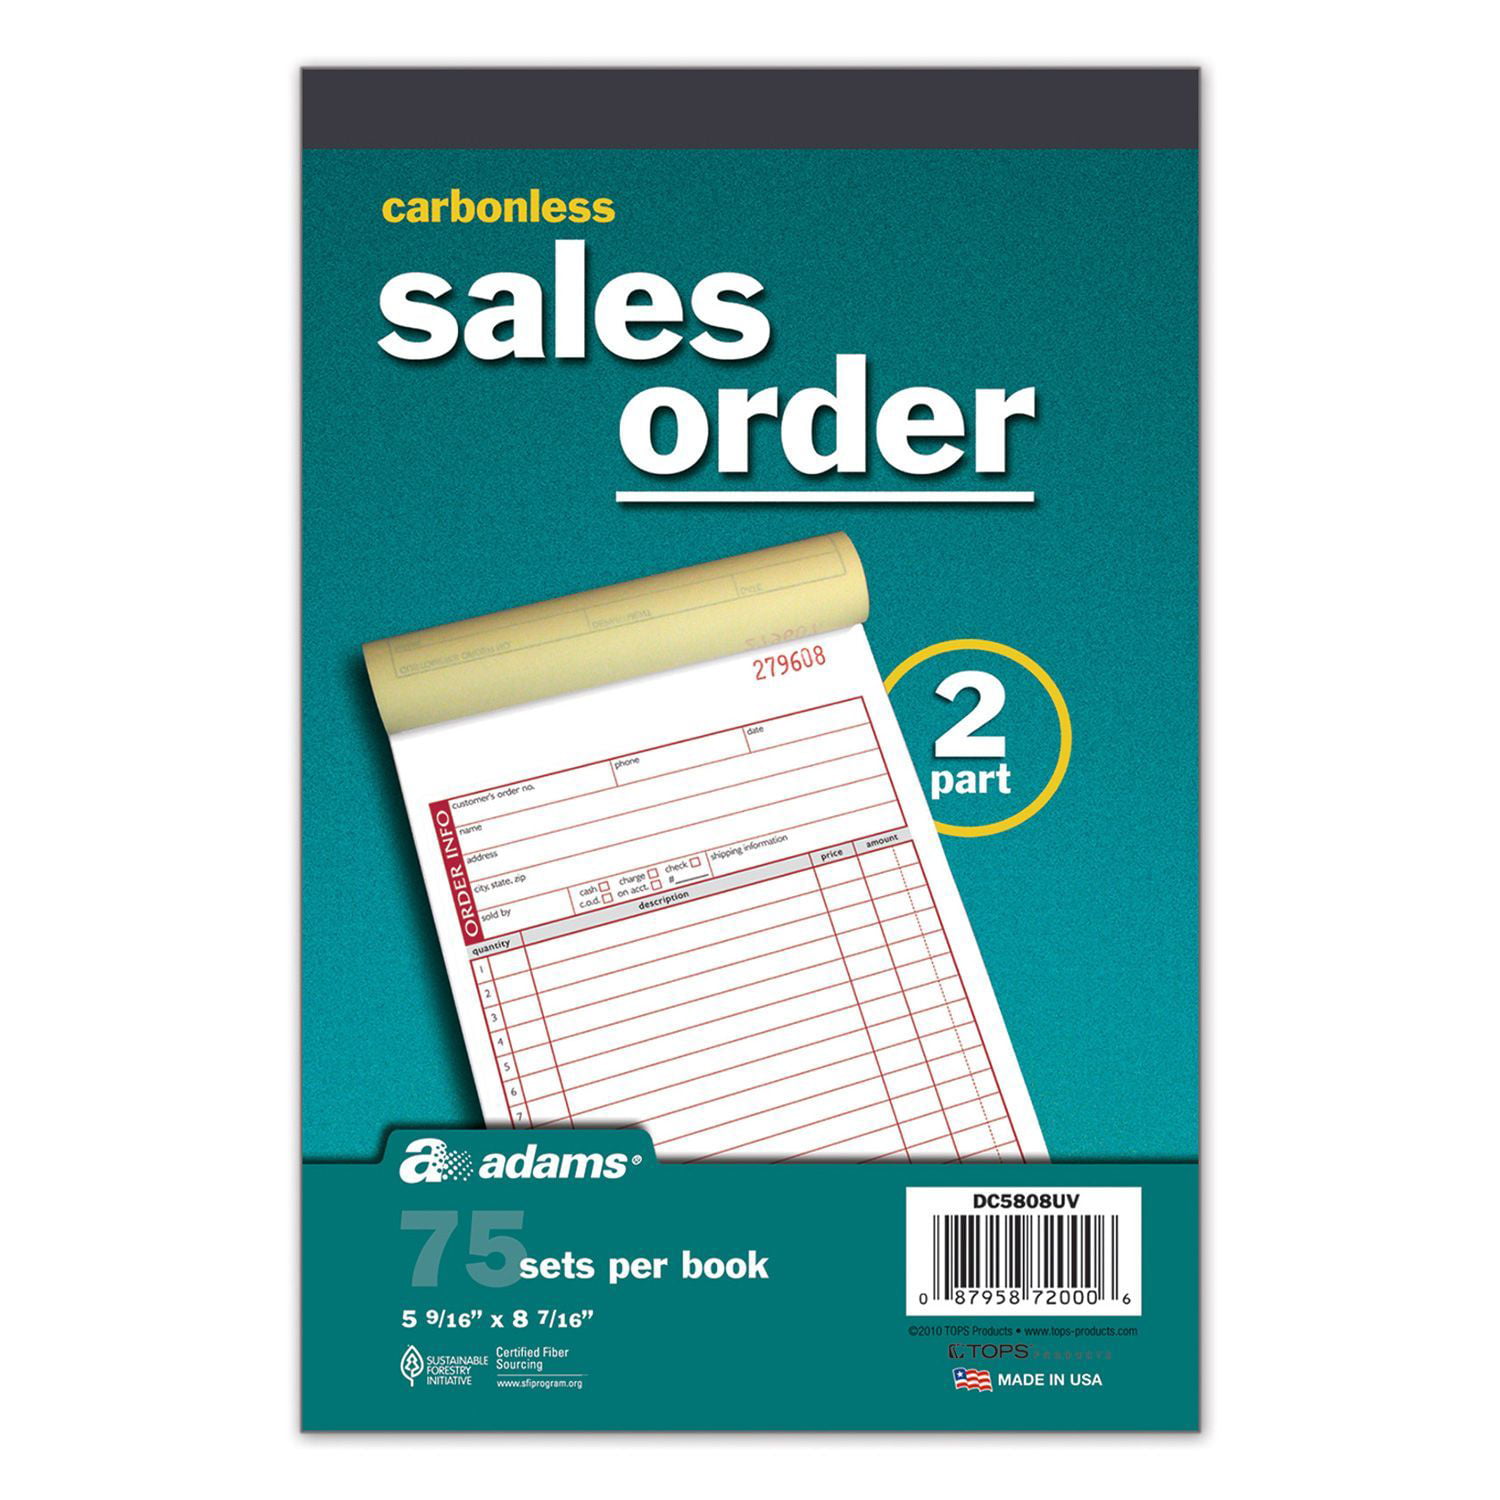 100 Pcs Sales Order Books 50 Duplicate Carbonless Forms 5 9/16" x 8 7/16" 3Parts 